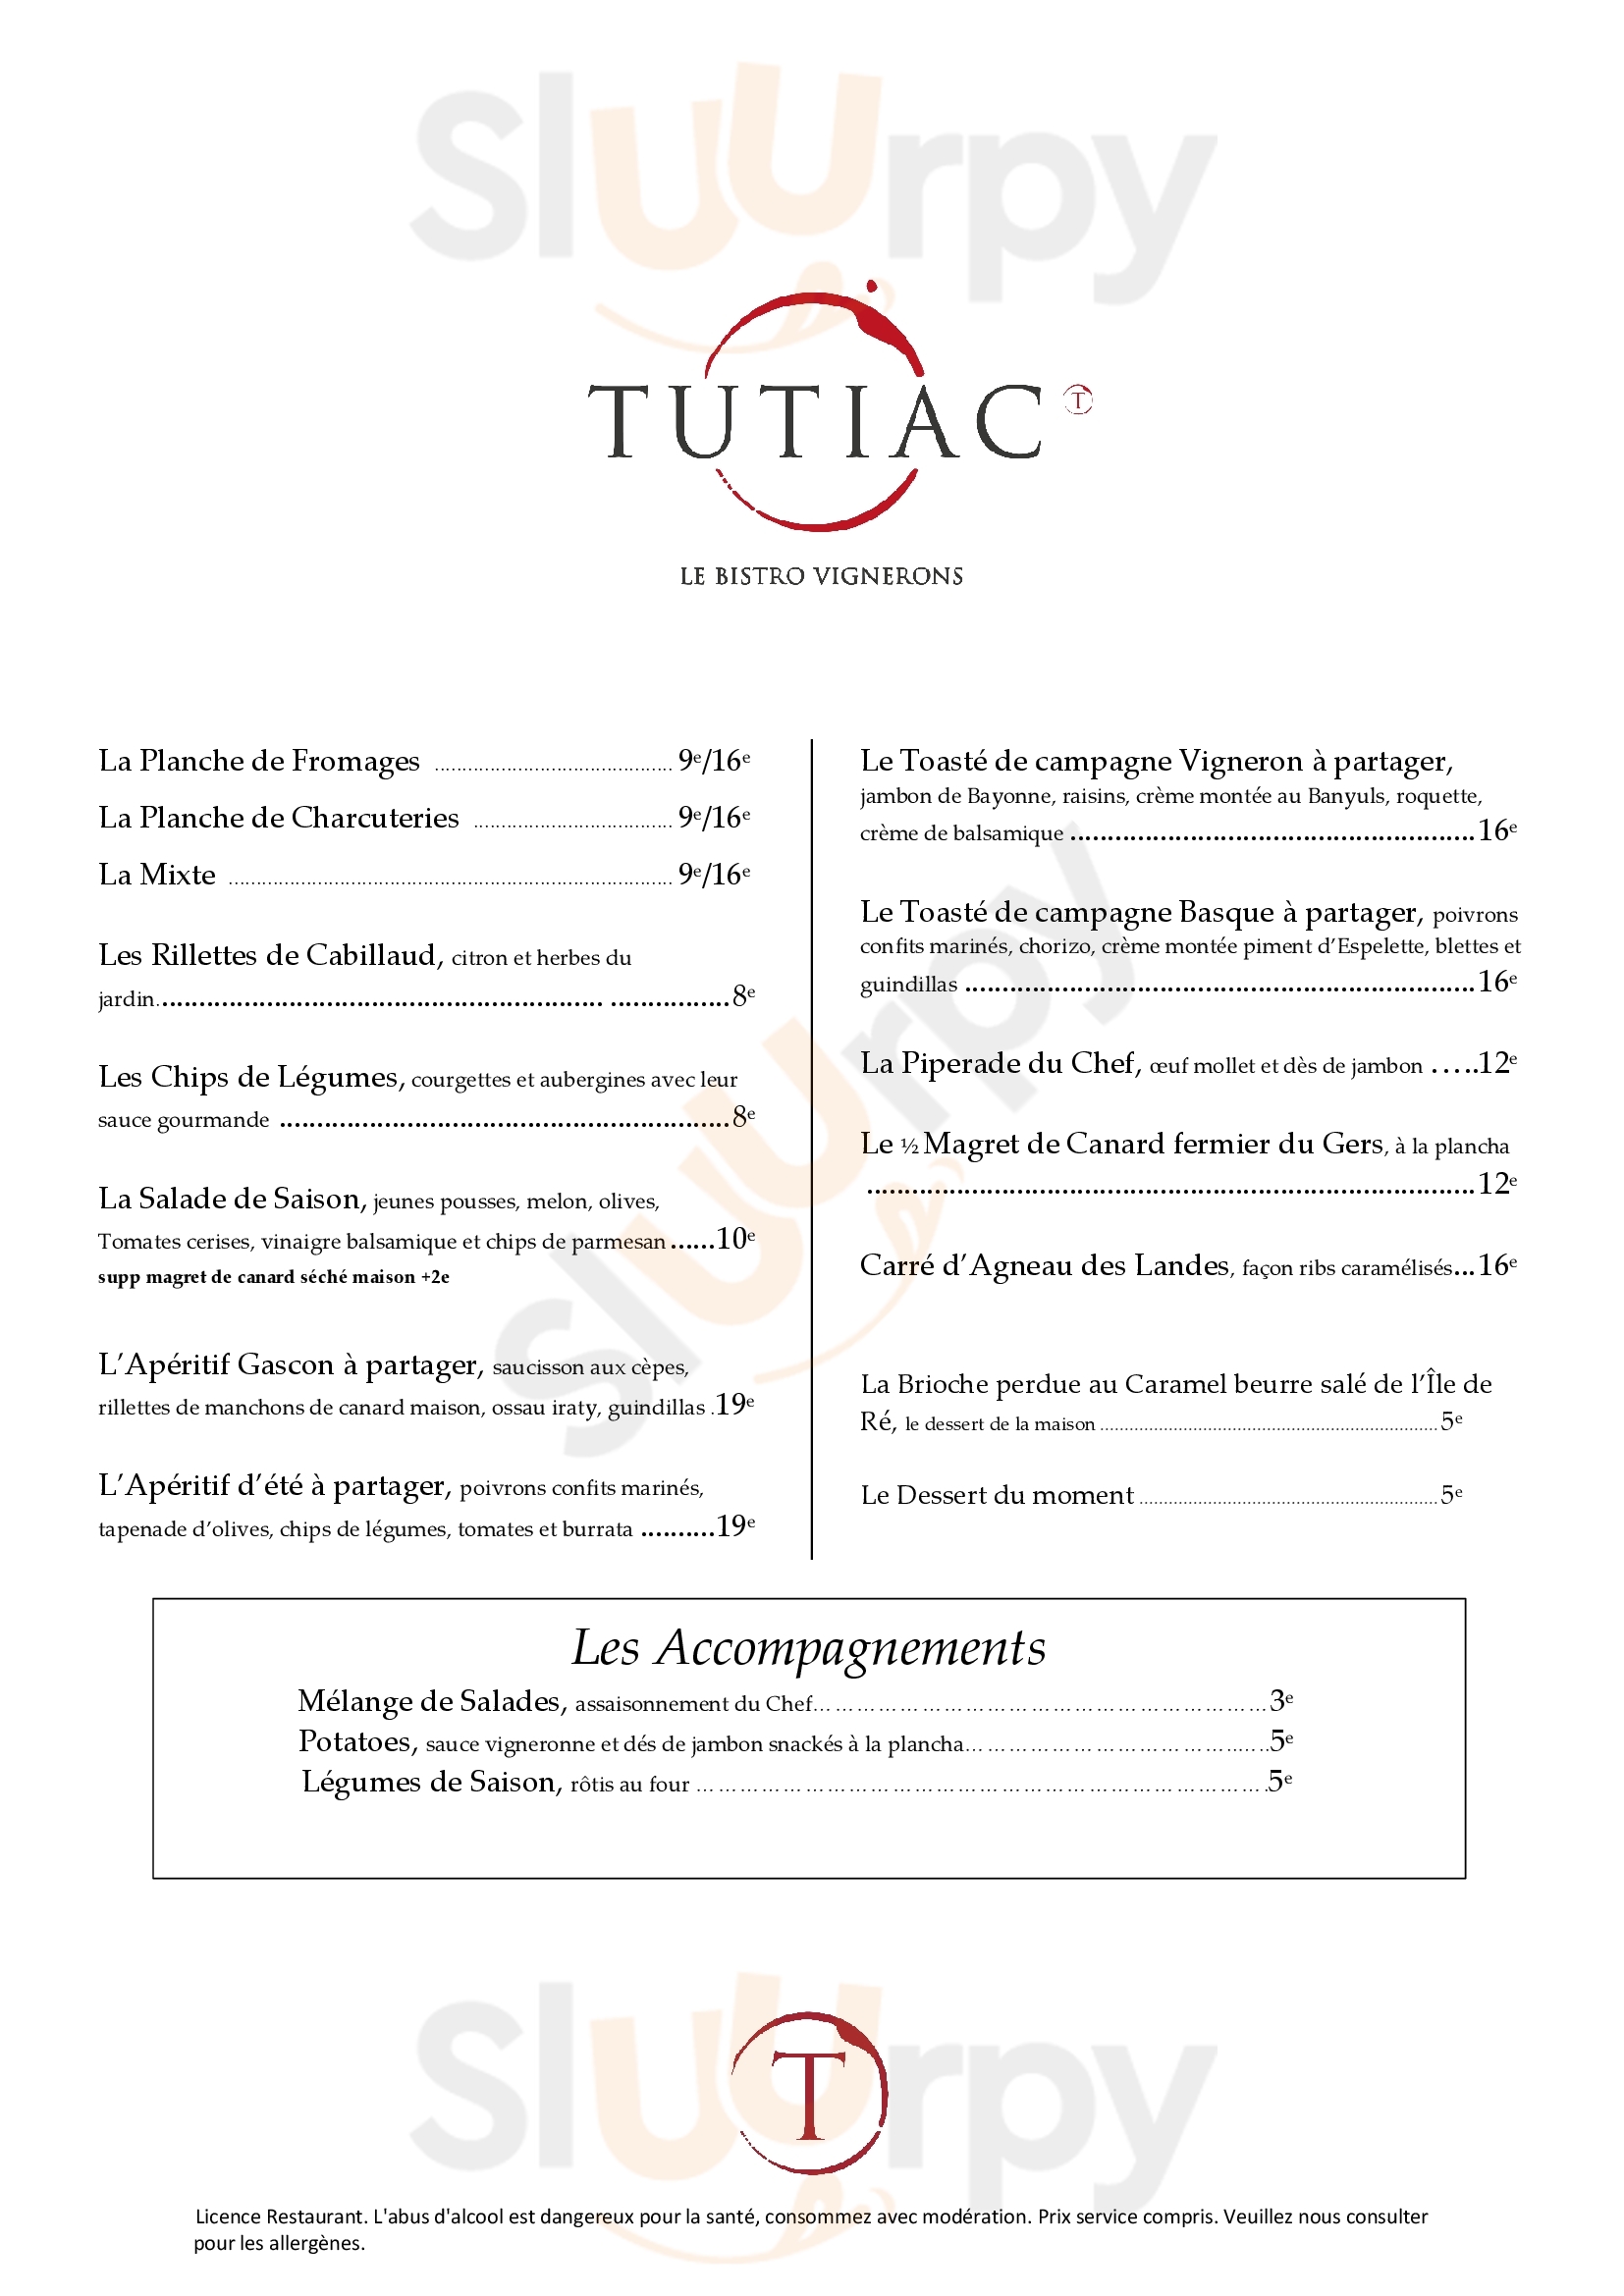 Tutiac, Le Bistro Vignerons Bordeaux Bordeaux Menu - 1